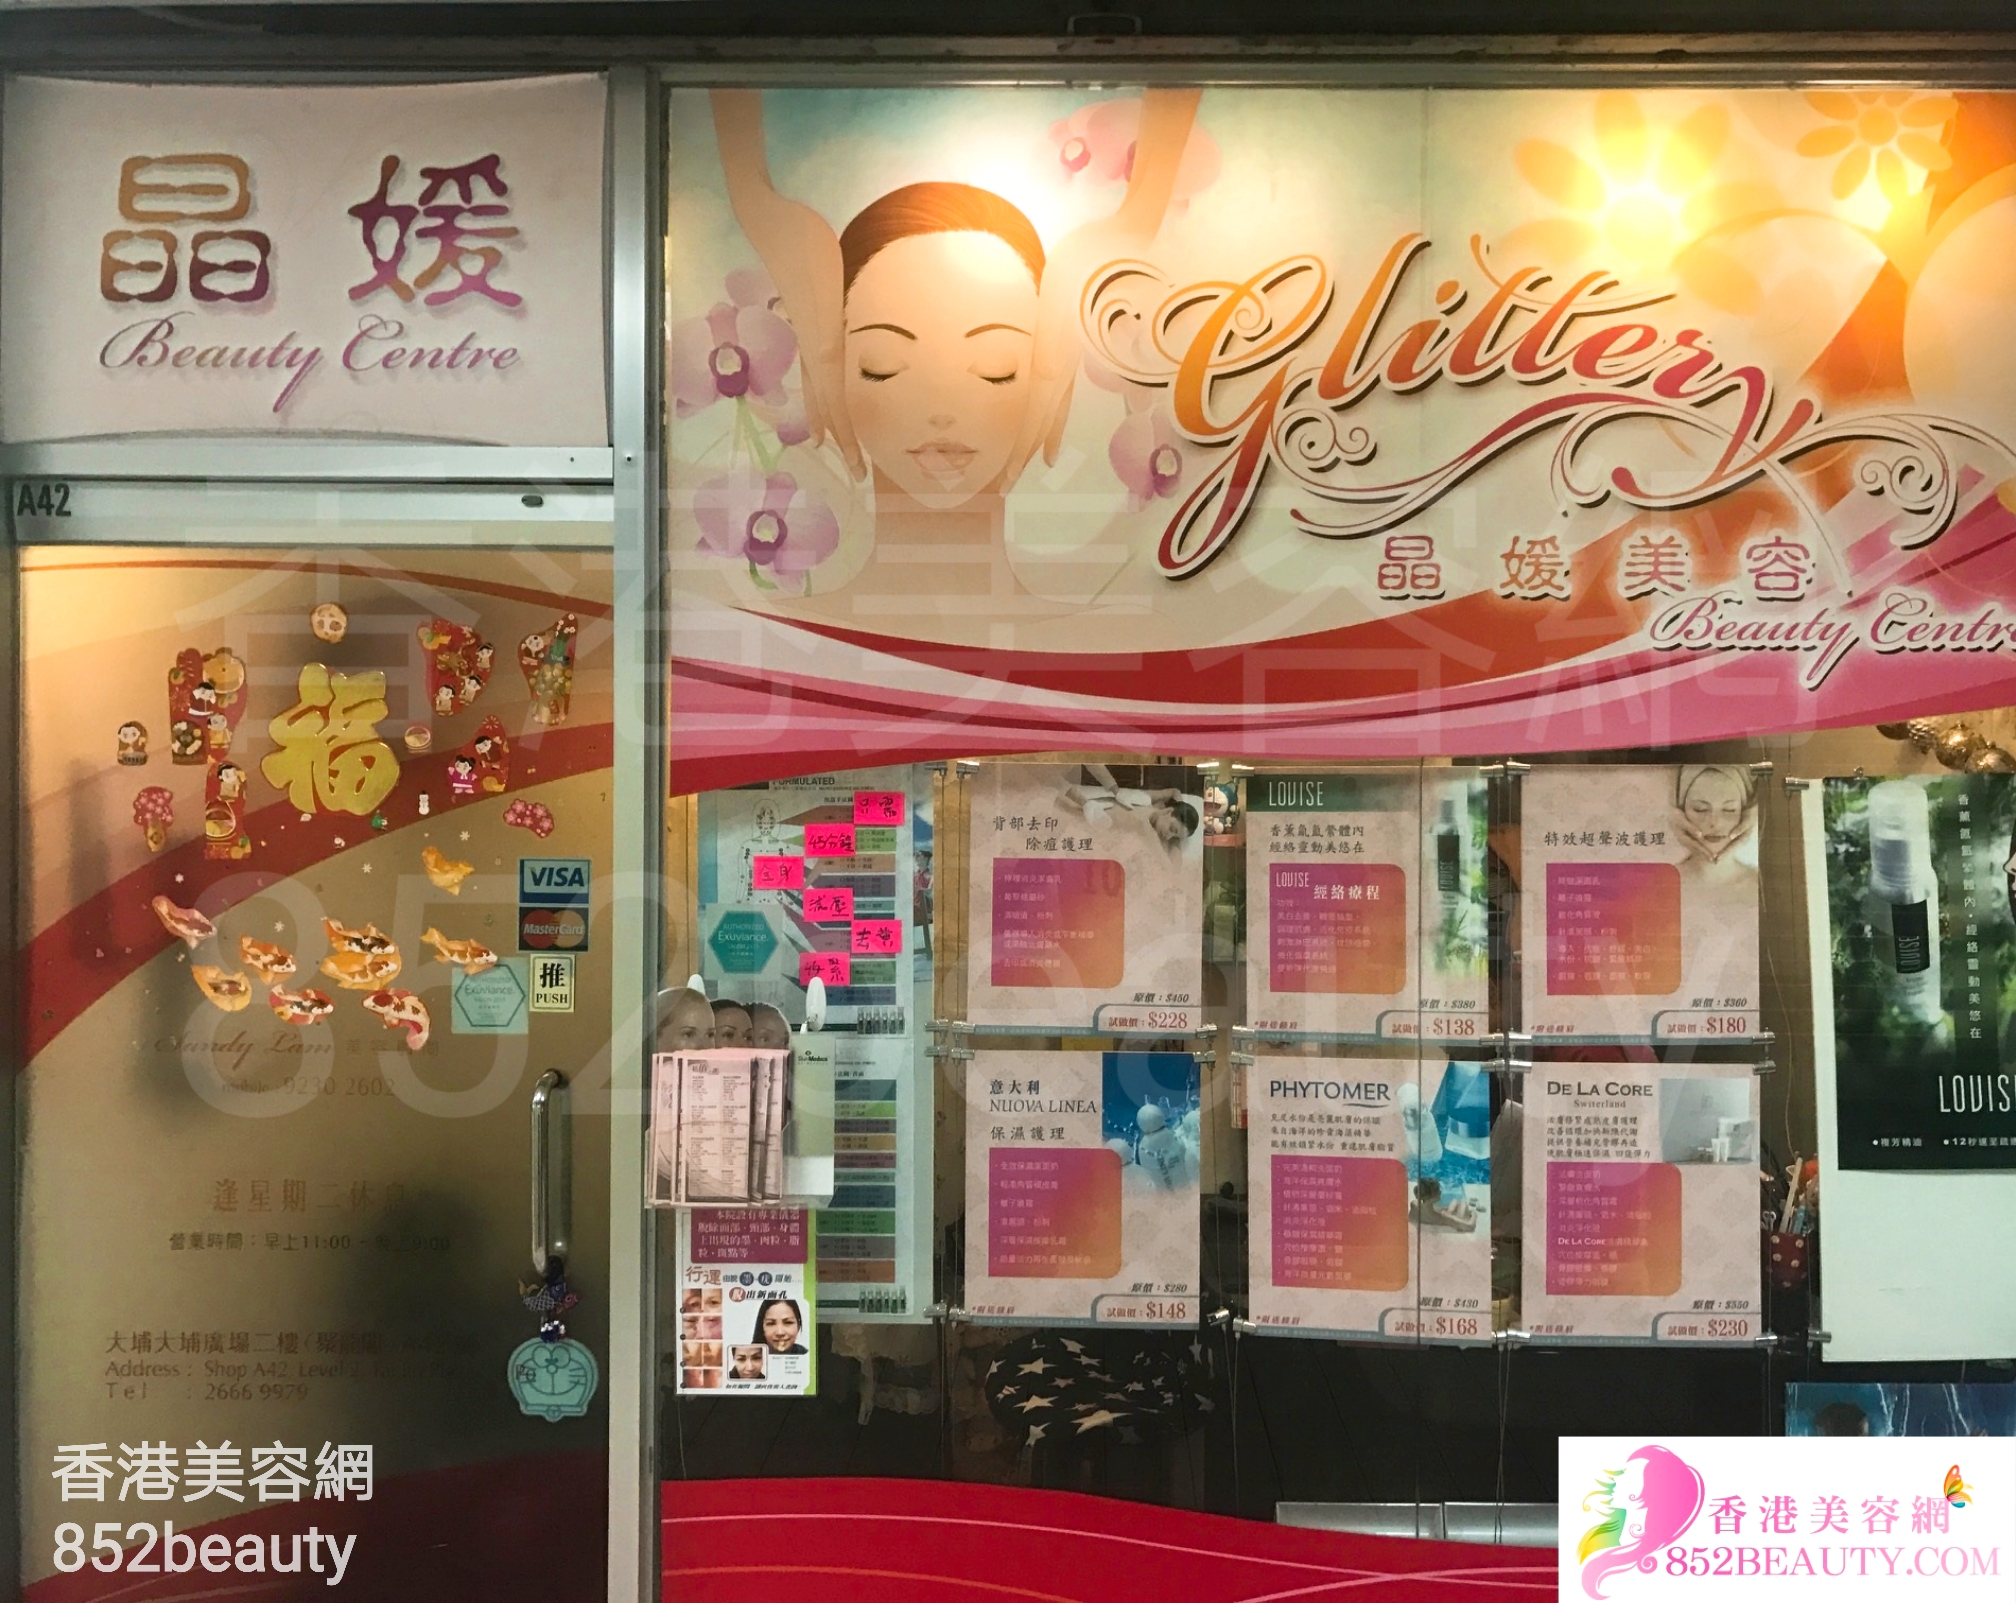 香港美容網 Hong Kong Beauty Salon 美容院 / 美容師: 晶媛美容中心